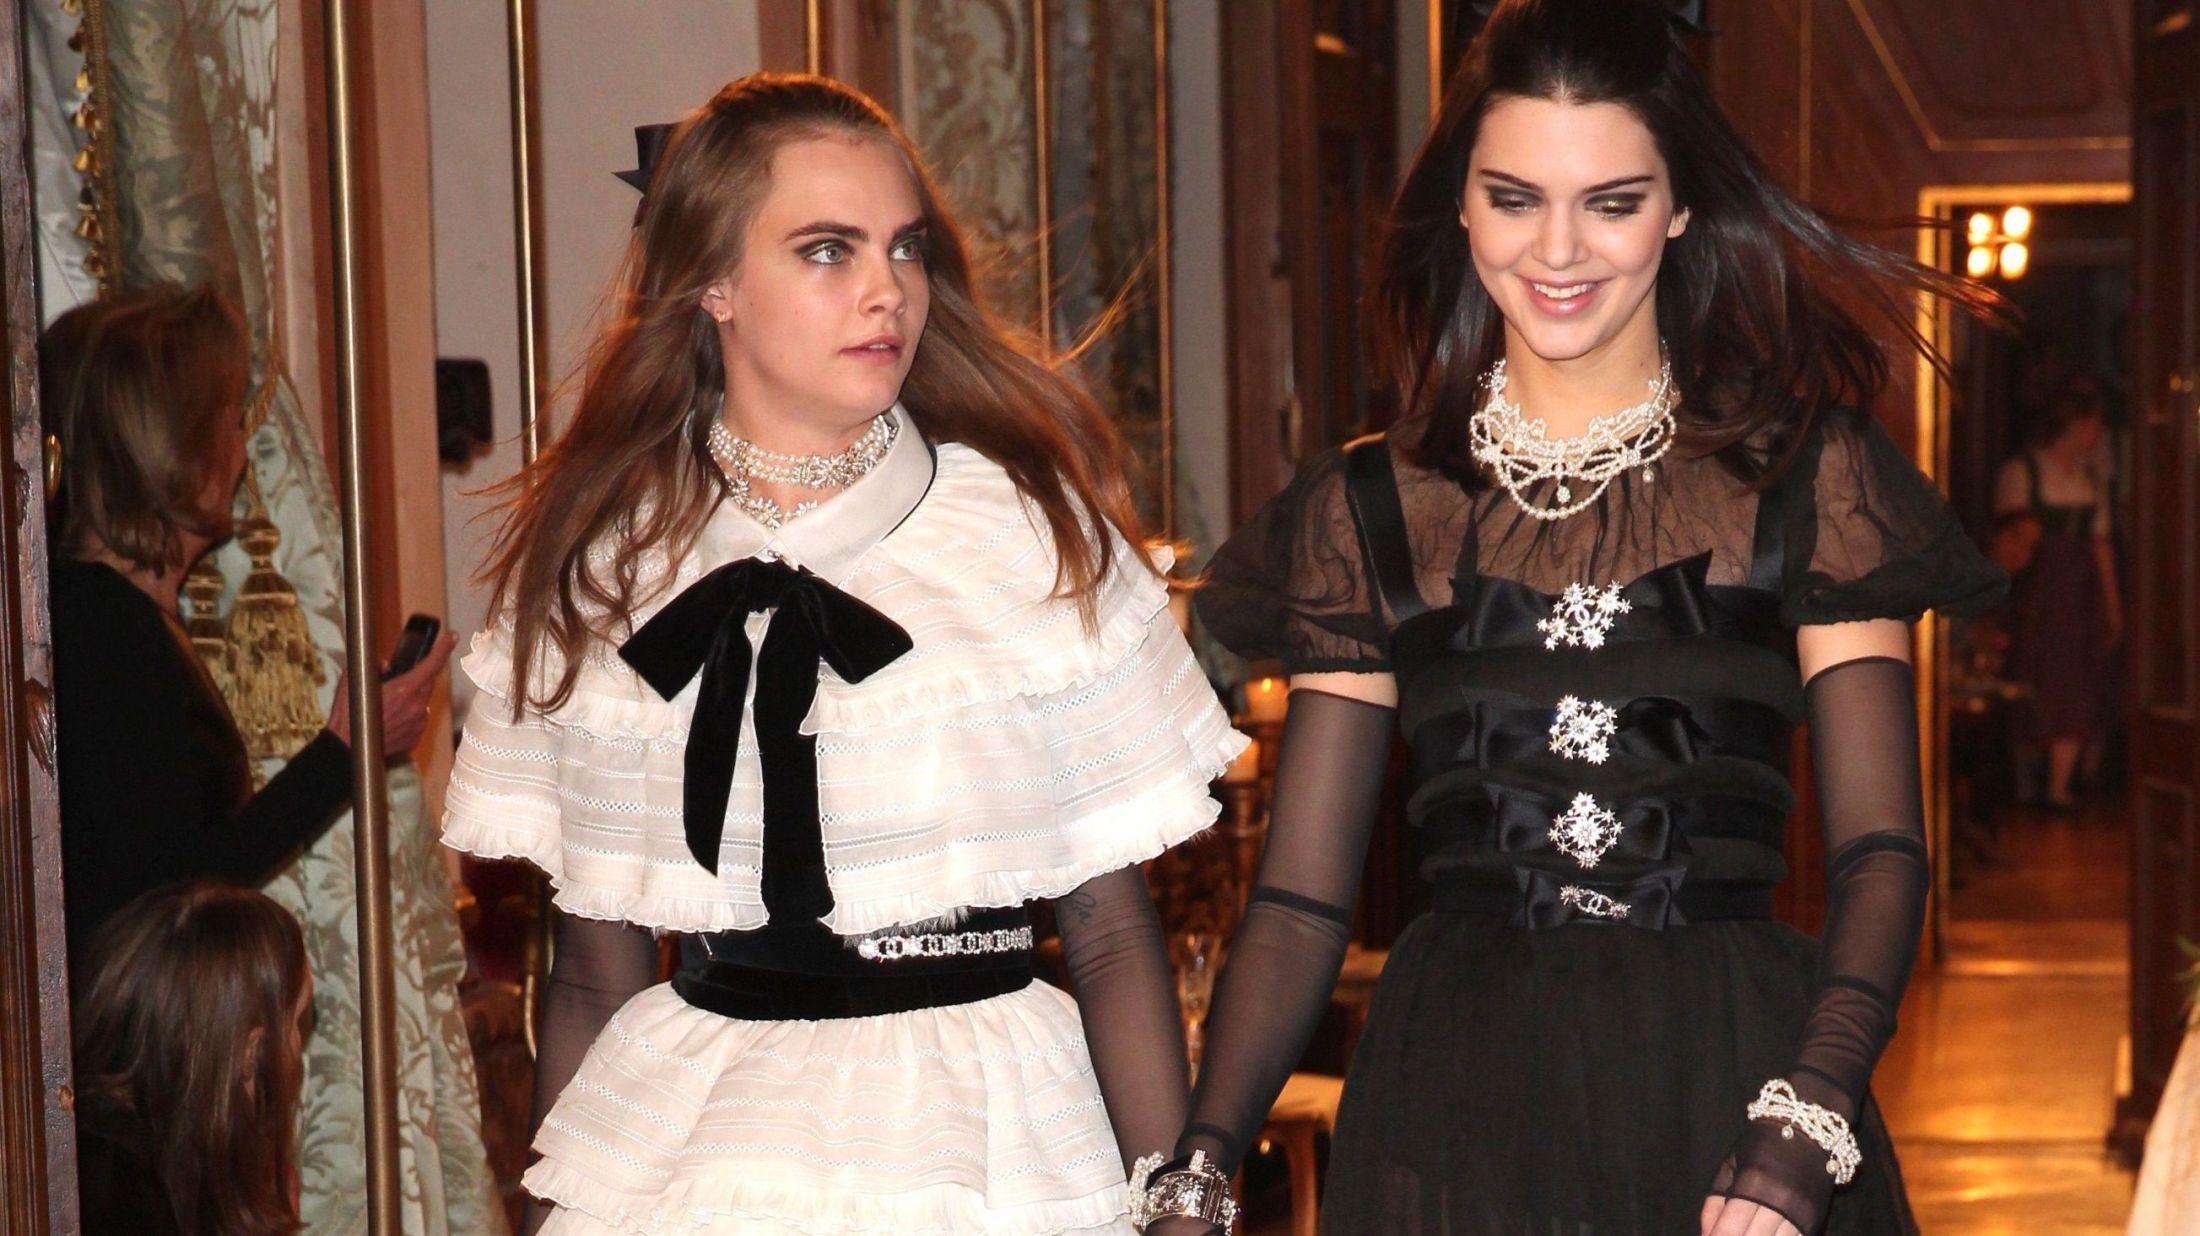 CHANEL-JENTER: Cara Delevingne (22) og Kendall Jenner (19) var ikke å se under årets Victoria's Secret Fashion Show, til tross for at de er to av verdens mest ettertraktede modeller for øyeblikket. Foto: Getty Images